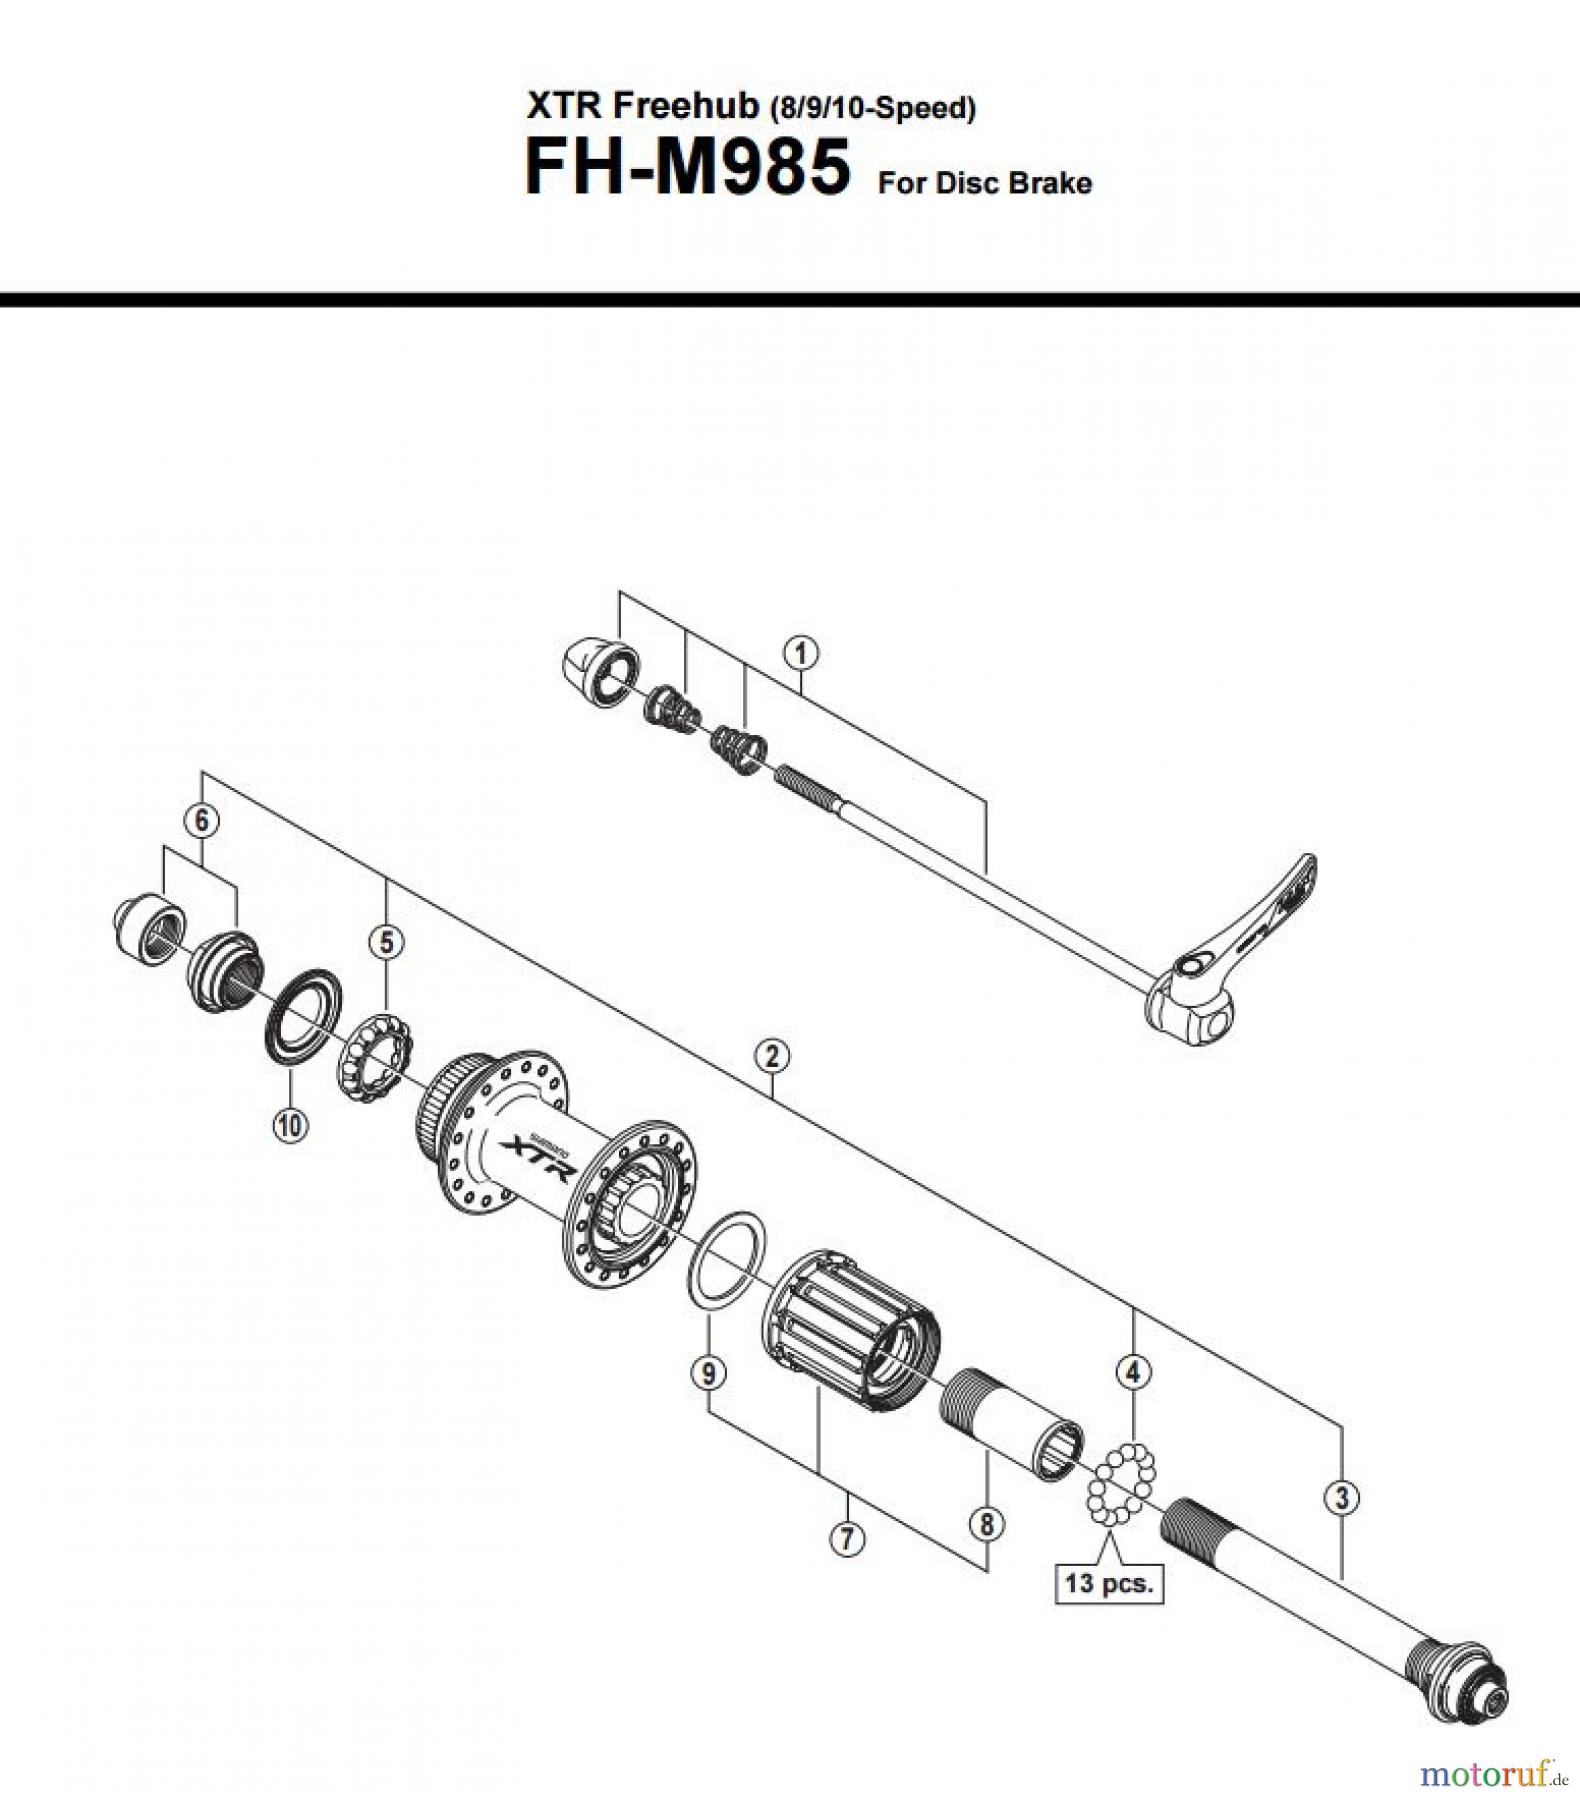  Shimano FH Free Hub - Freilaufnabe FH-M985 -3012_v1 XTR Freehub (8/9/10-Speed